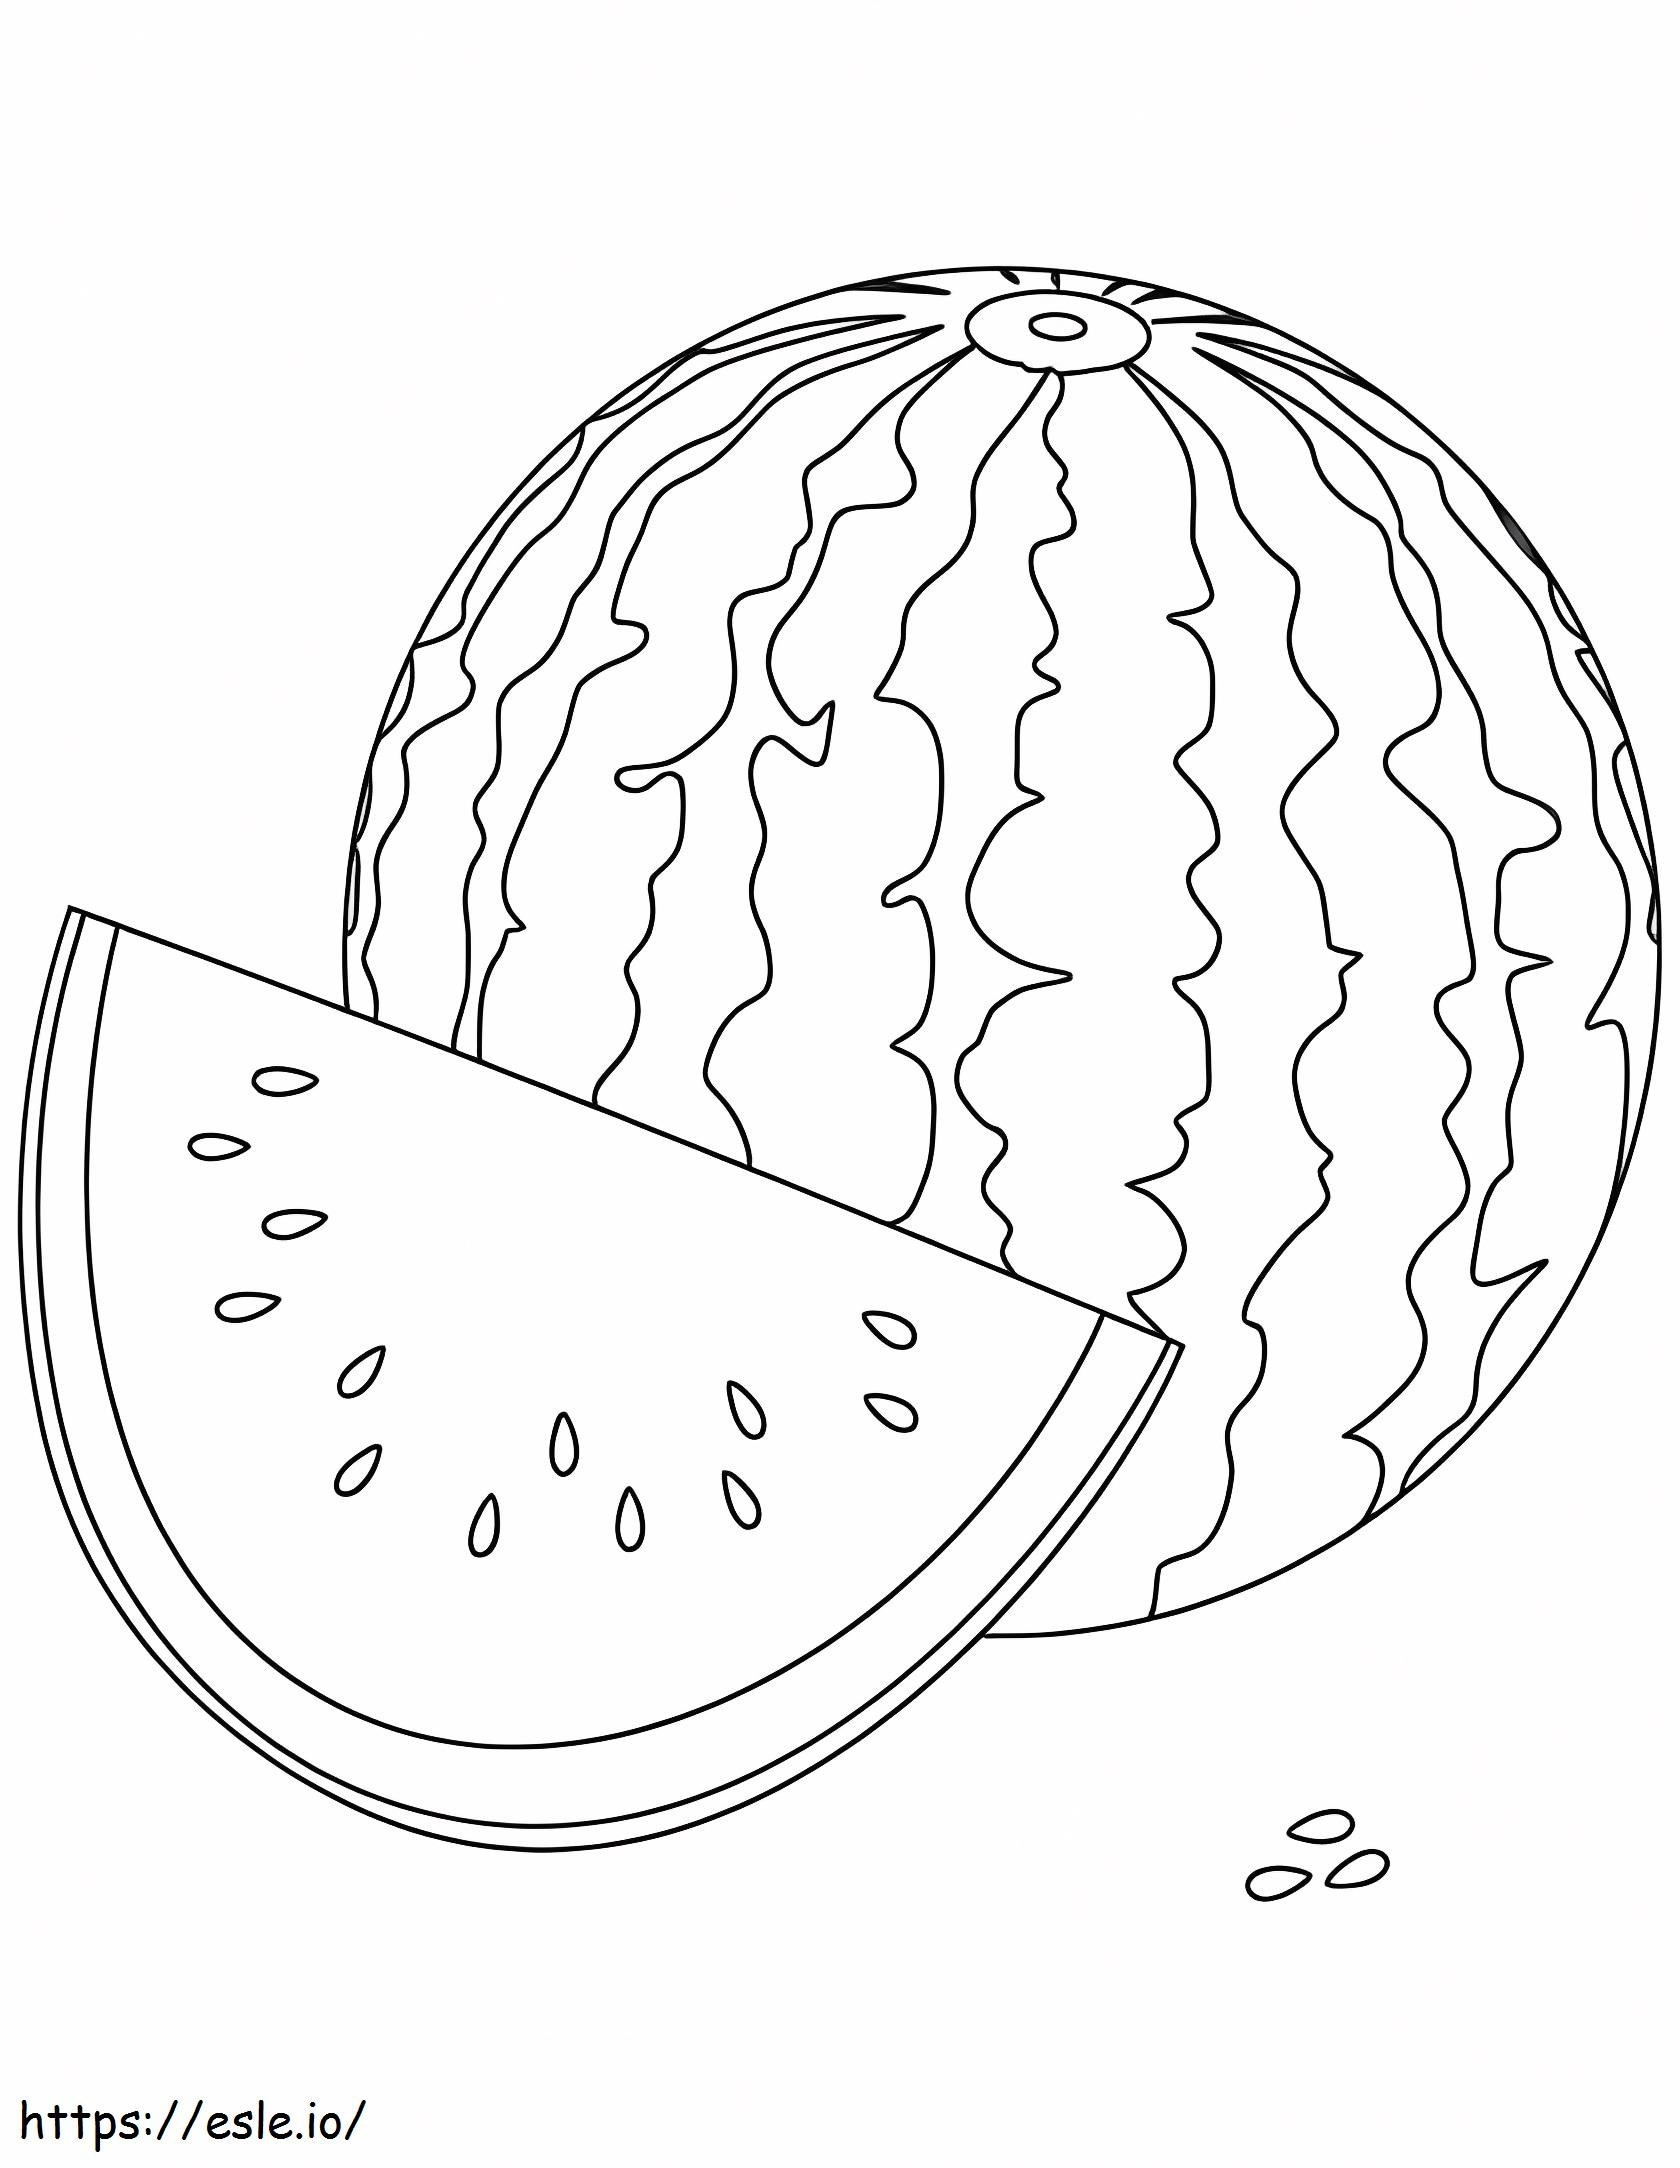 Uma melancia e uma fatia de melancia para colorir